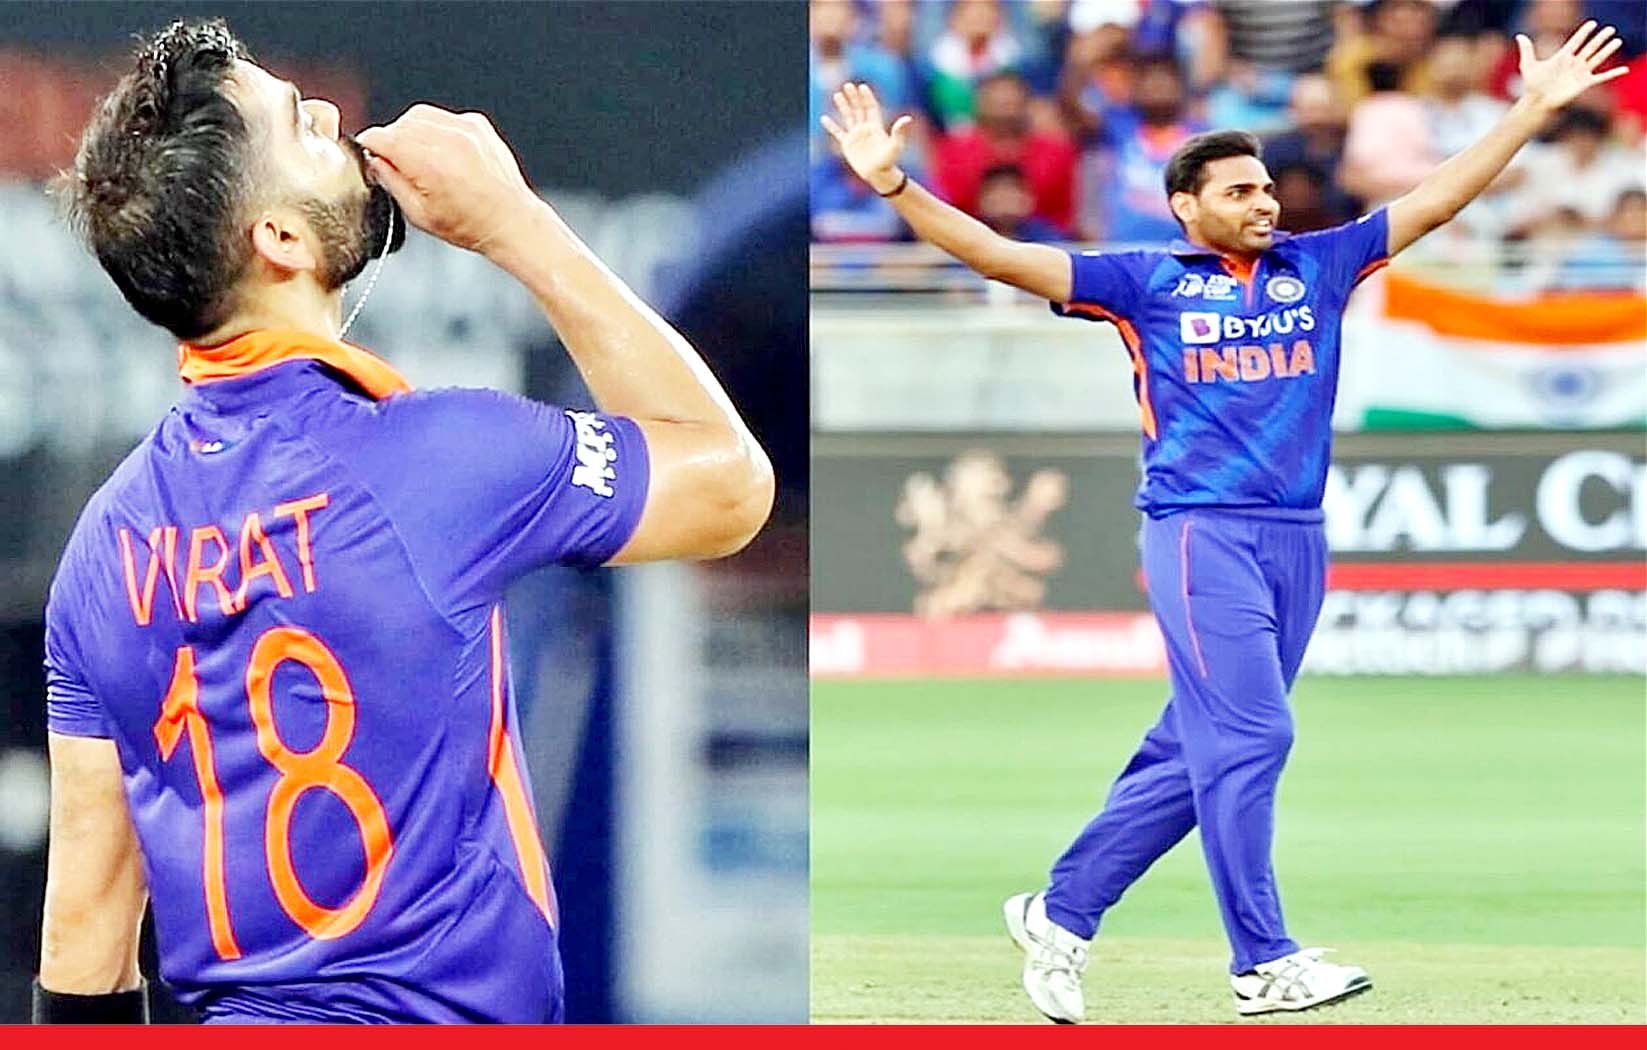 विराट के शतक और भुवनेश्वर कुमार की घातक गेंदबाजी के सहारे भारत ने अफगानिस्तान को हराया